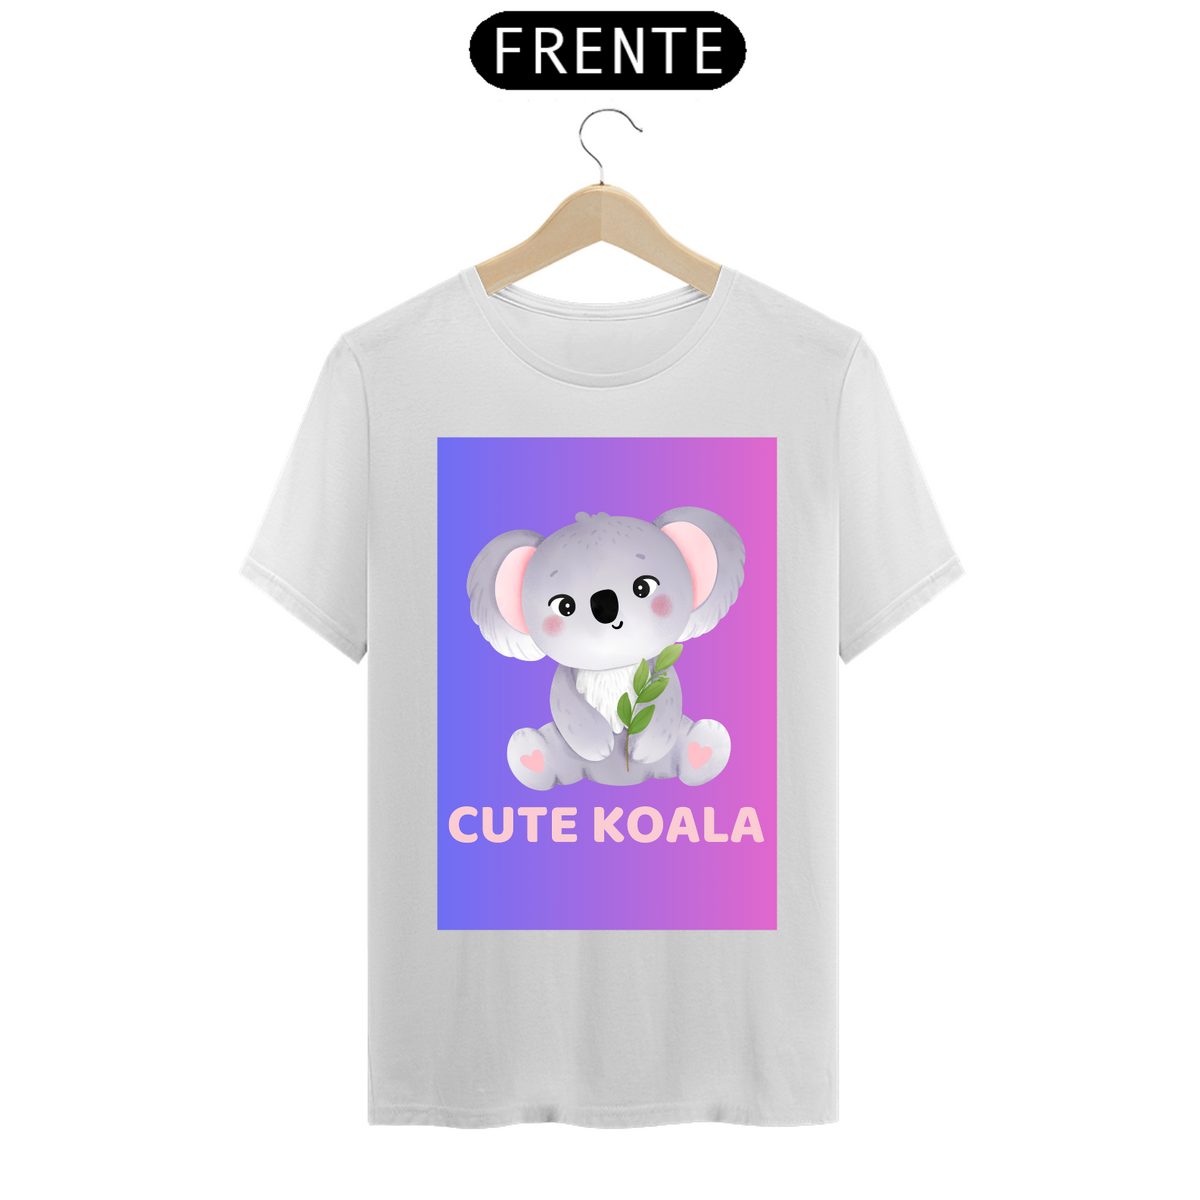 Nome do produto: Cute Koala